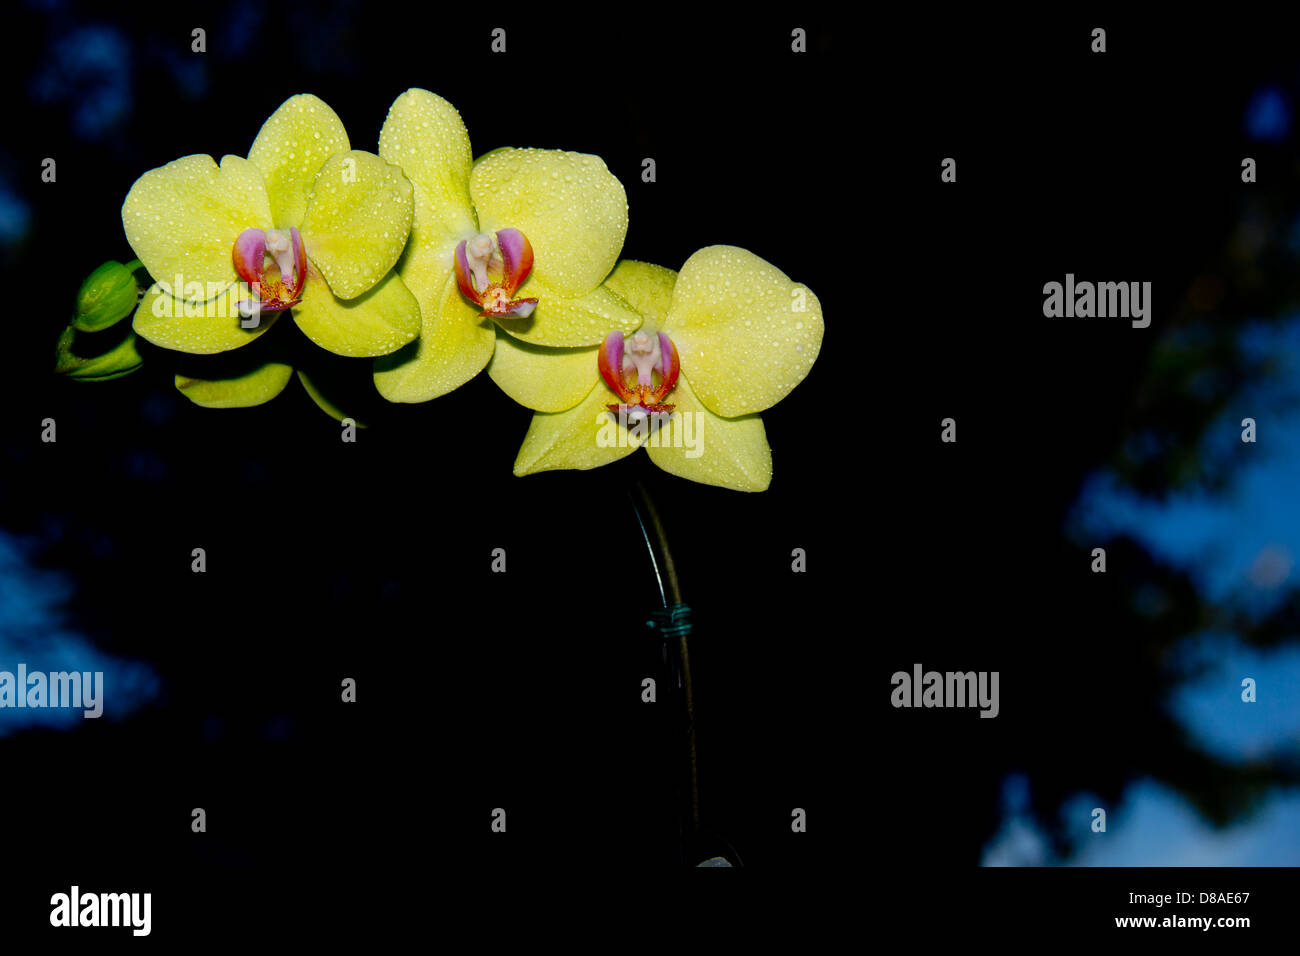 Immagine di un orchidea gialla contro uno sfondo nero. Foto Stock